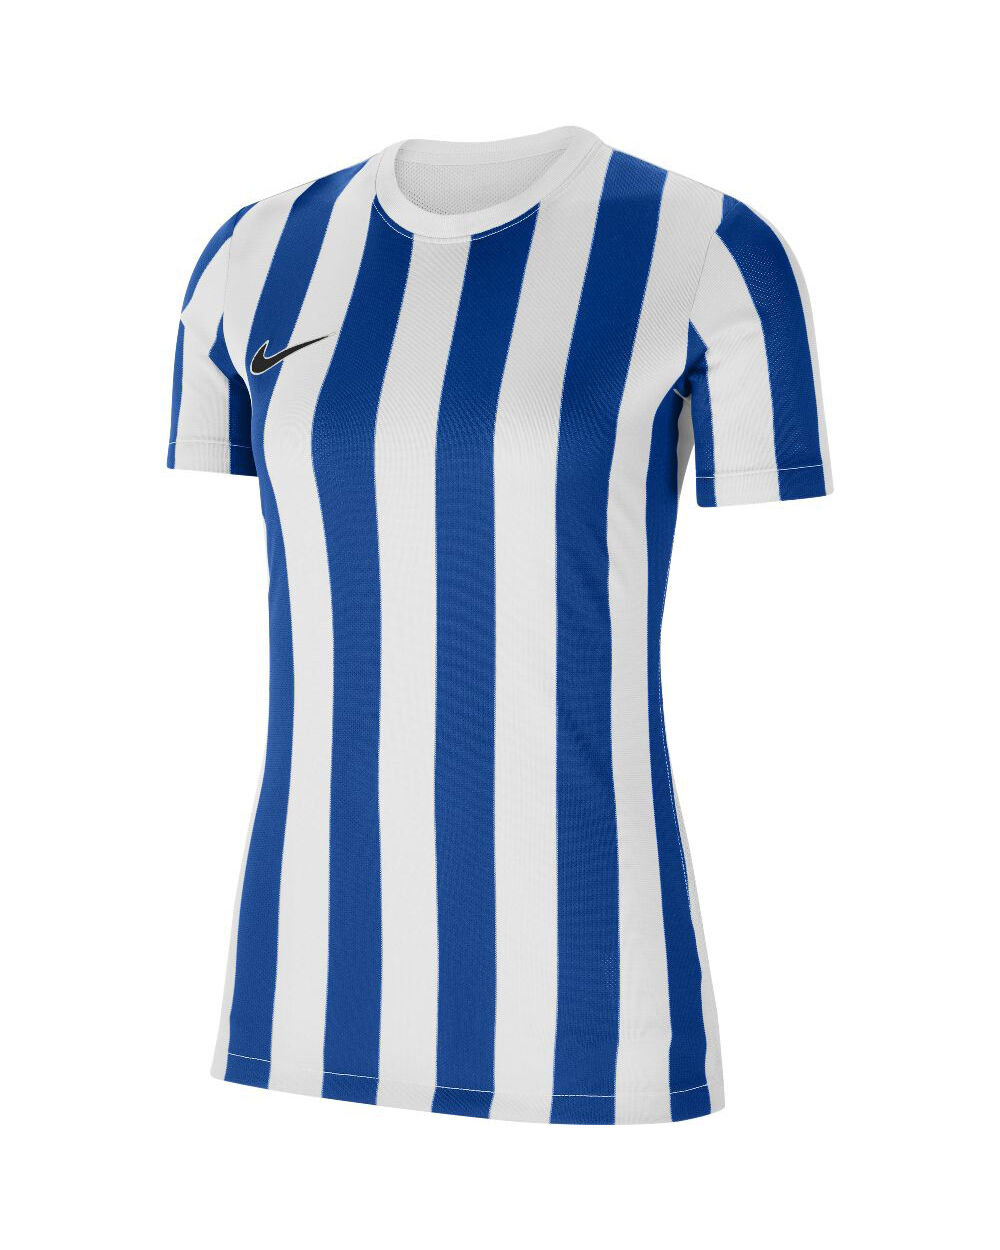 Nike Maglia Striped Division IV Blu Bianco e Reale per Donne CW3816-102 S